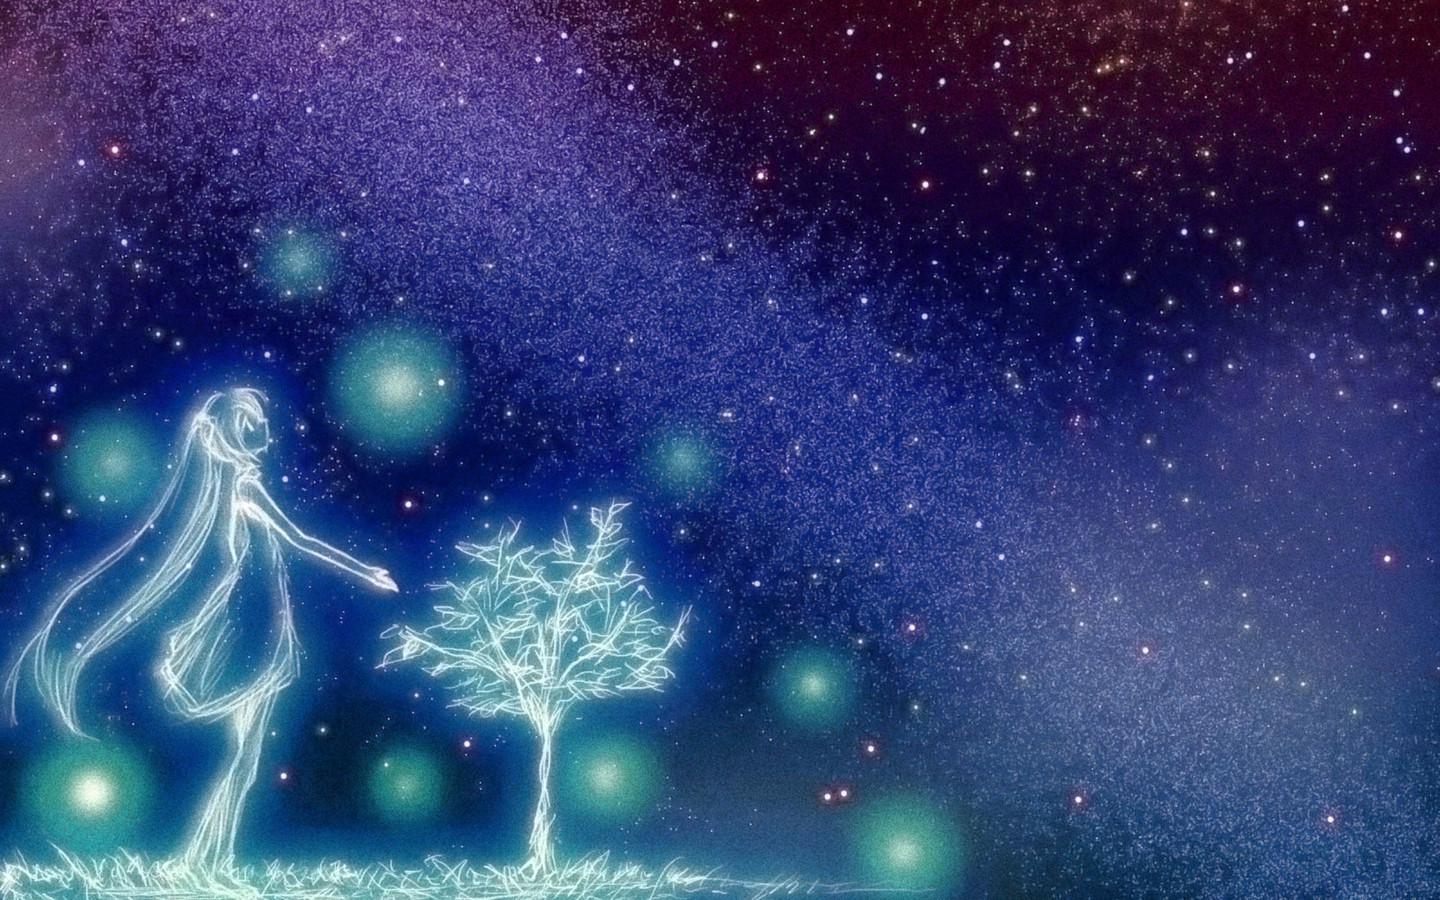 Anime Night Sky. kumpulan ilmu dan pengetahuan penting